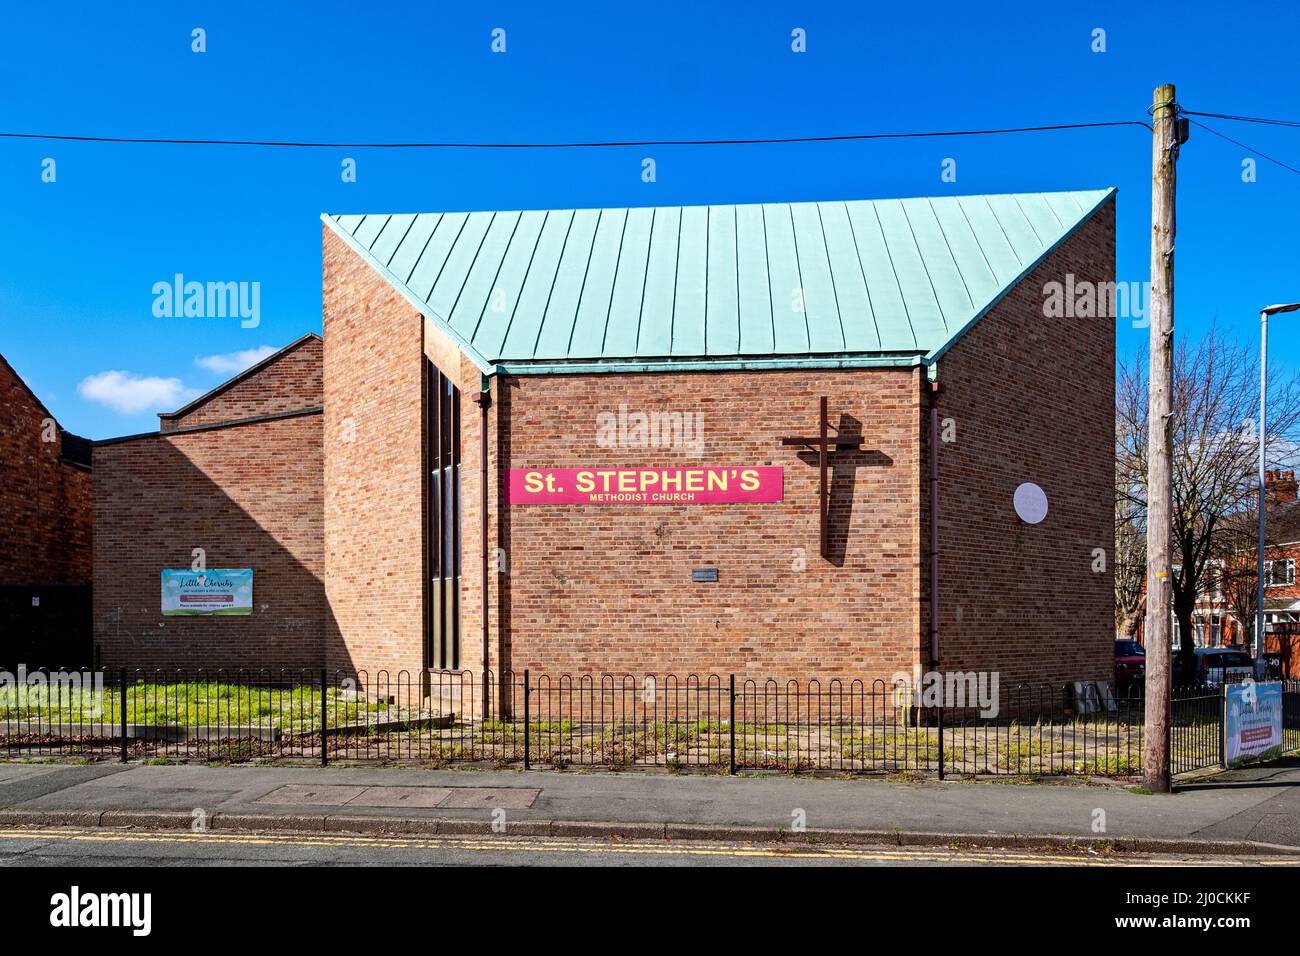 St Stephen's Methodist church in Crewe Cheshire UK Stock Photo